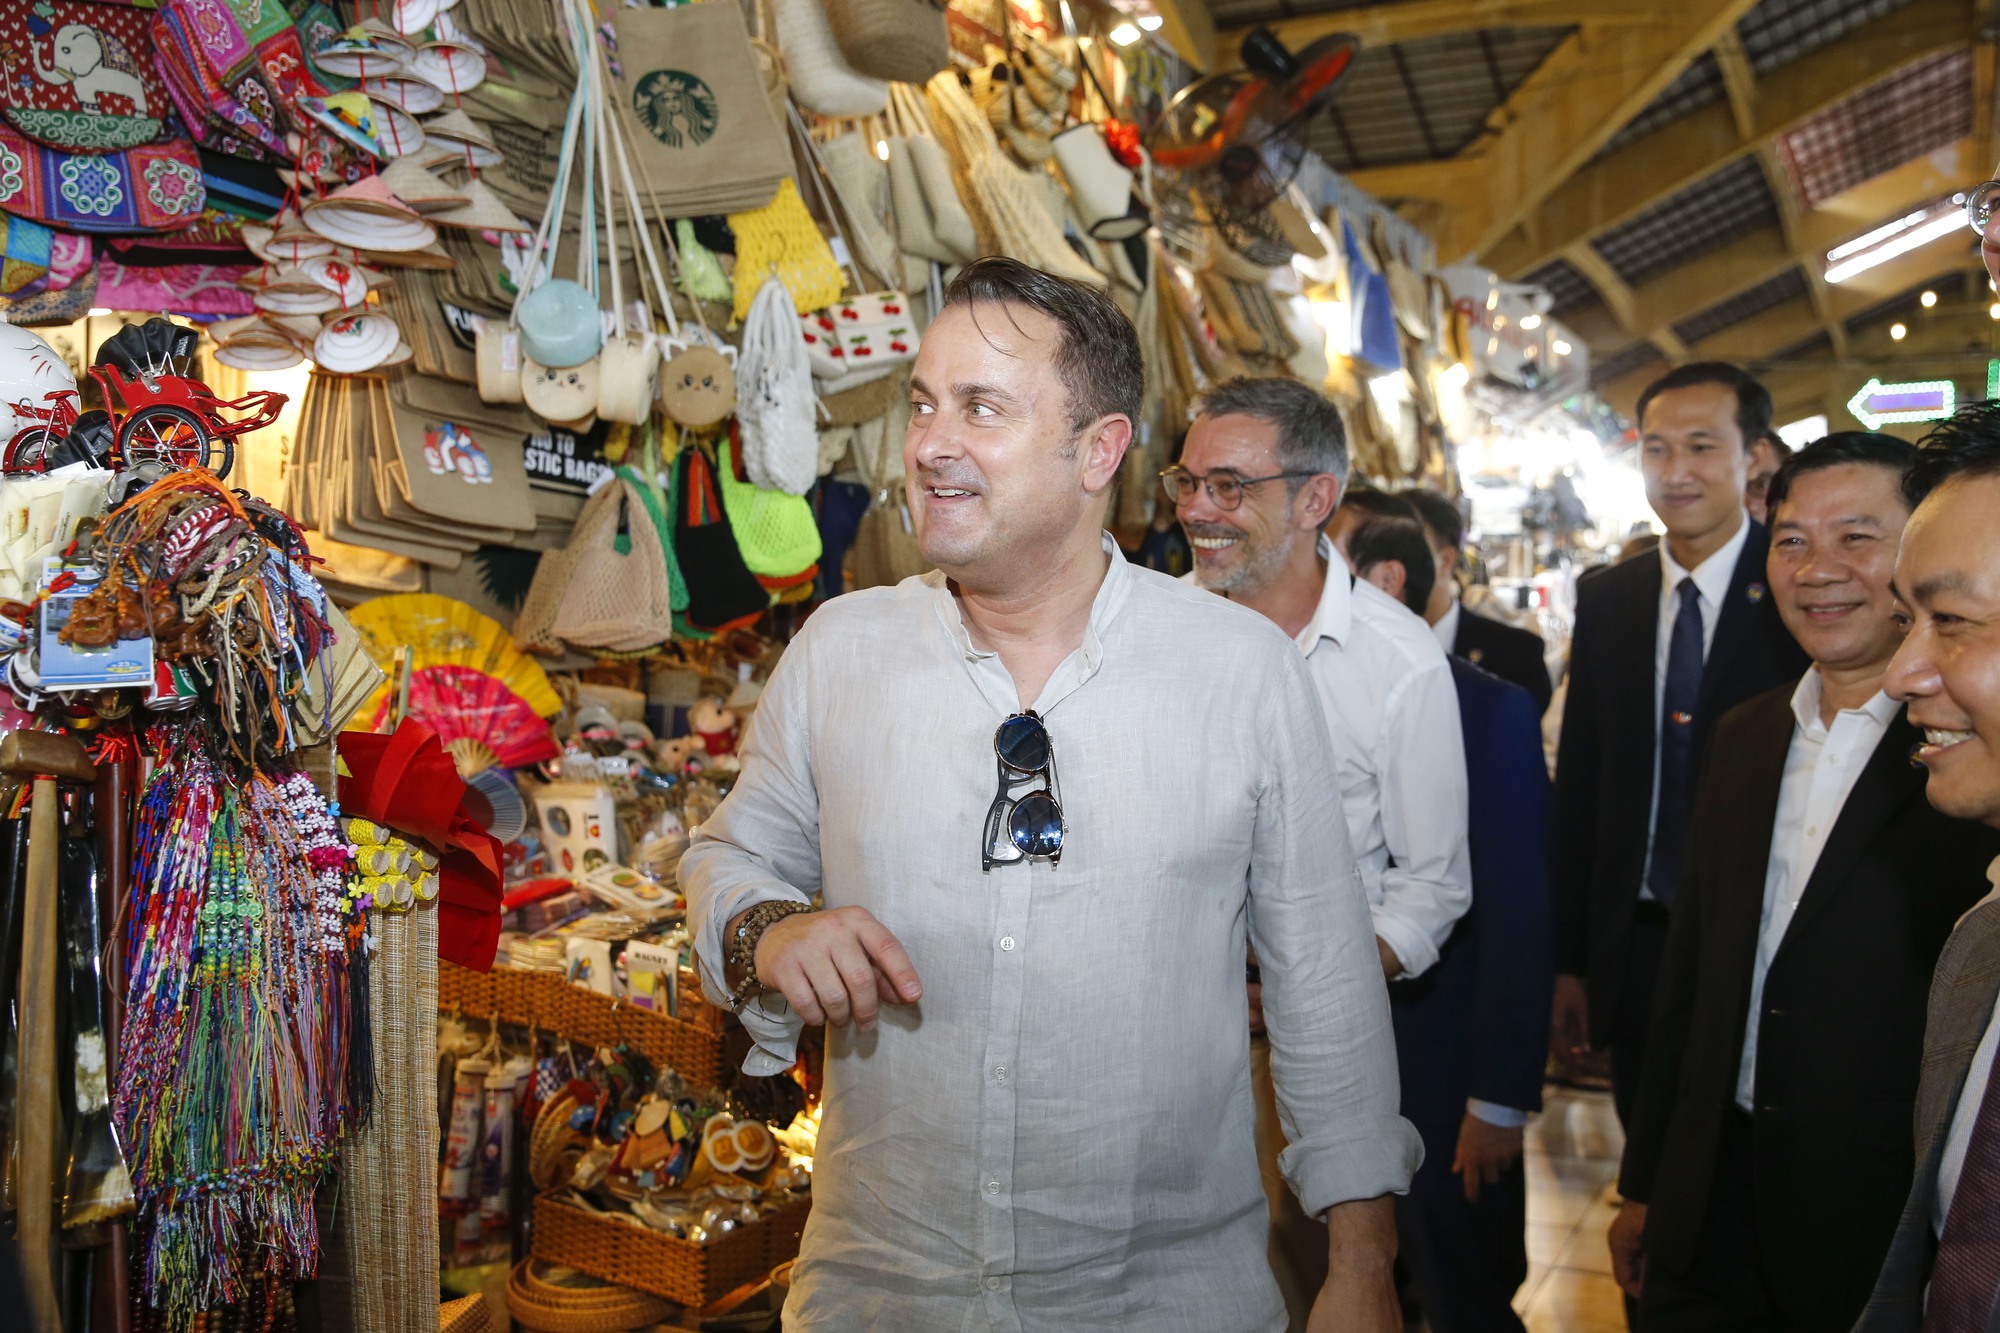 Thủ tướng Luxembourg dạo chợ Bến Thành - Ảnh 4.